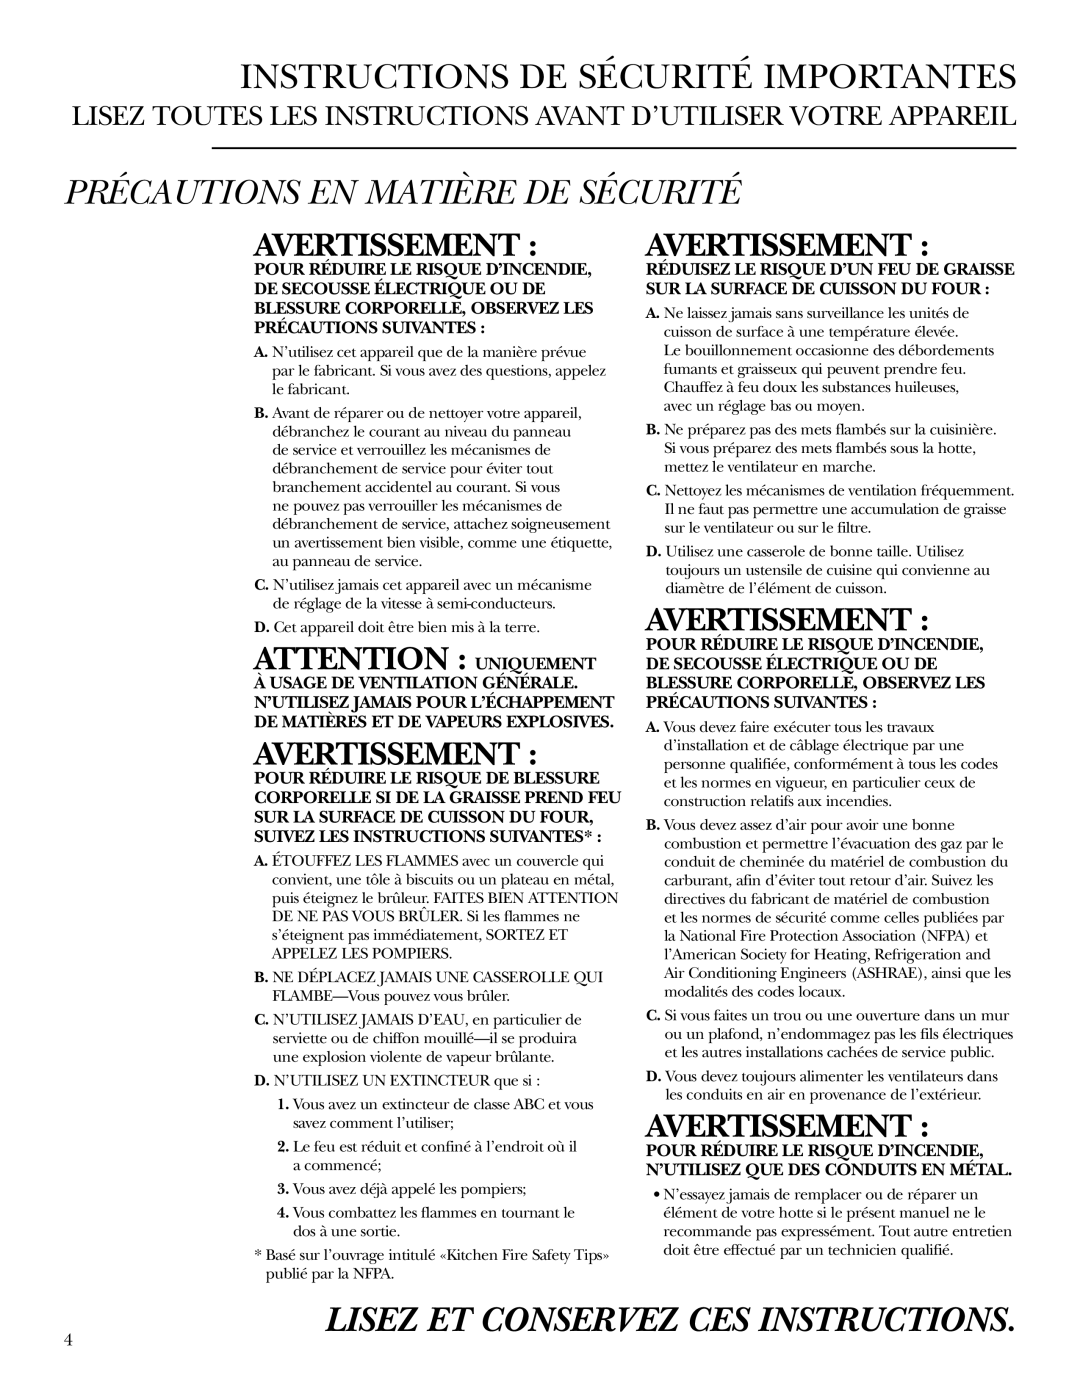 GE Monogram ZV42, ZV54 owner manual Instructions De Sécurité Importantes, Précautions En Matière De Sécurité, Avertissement 